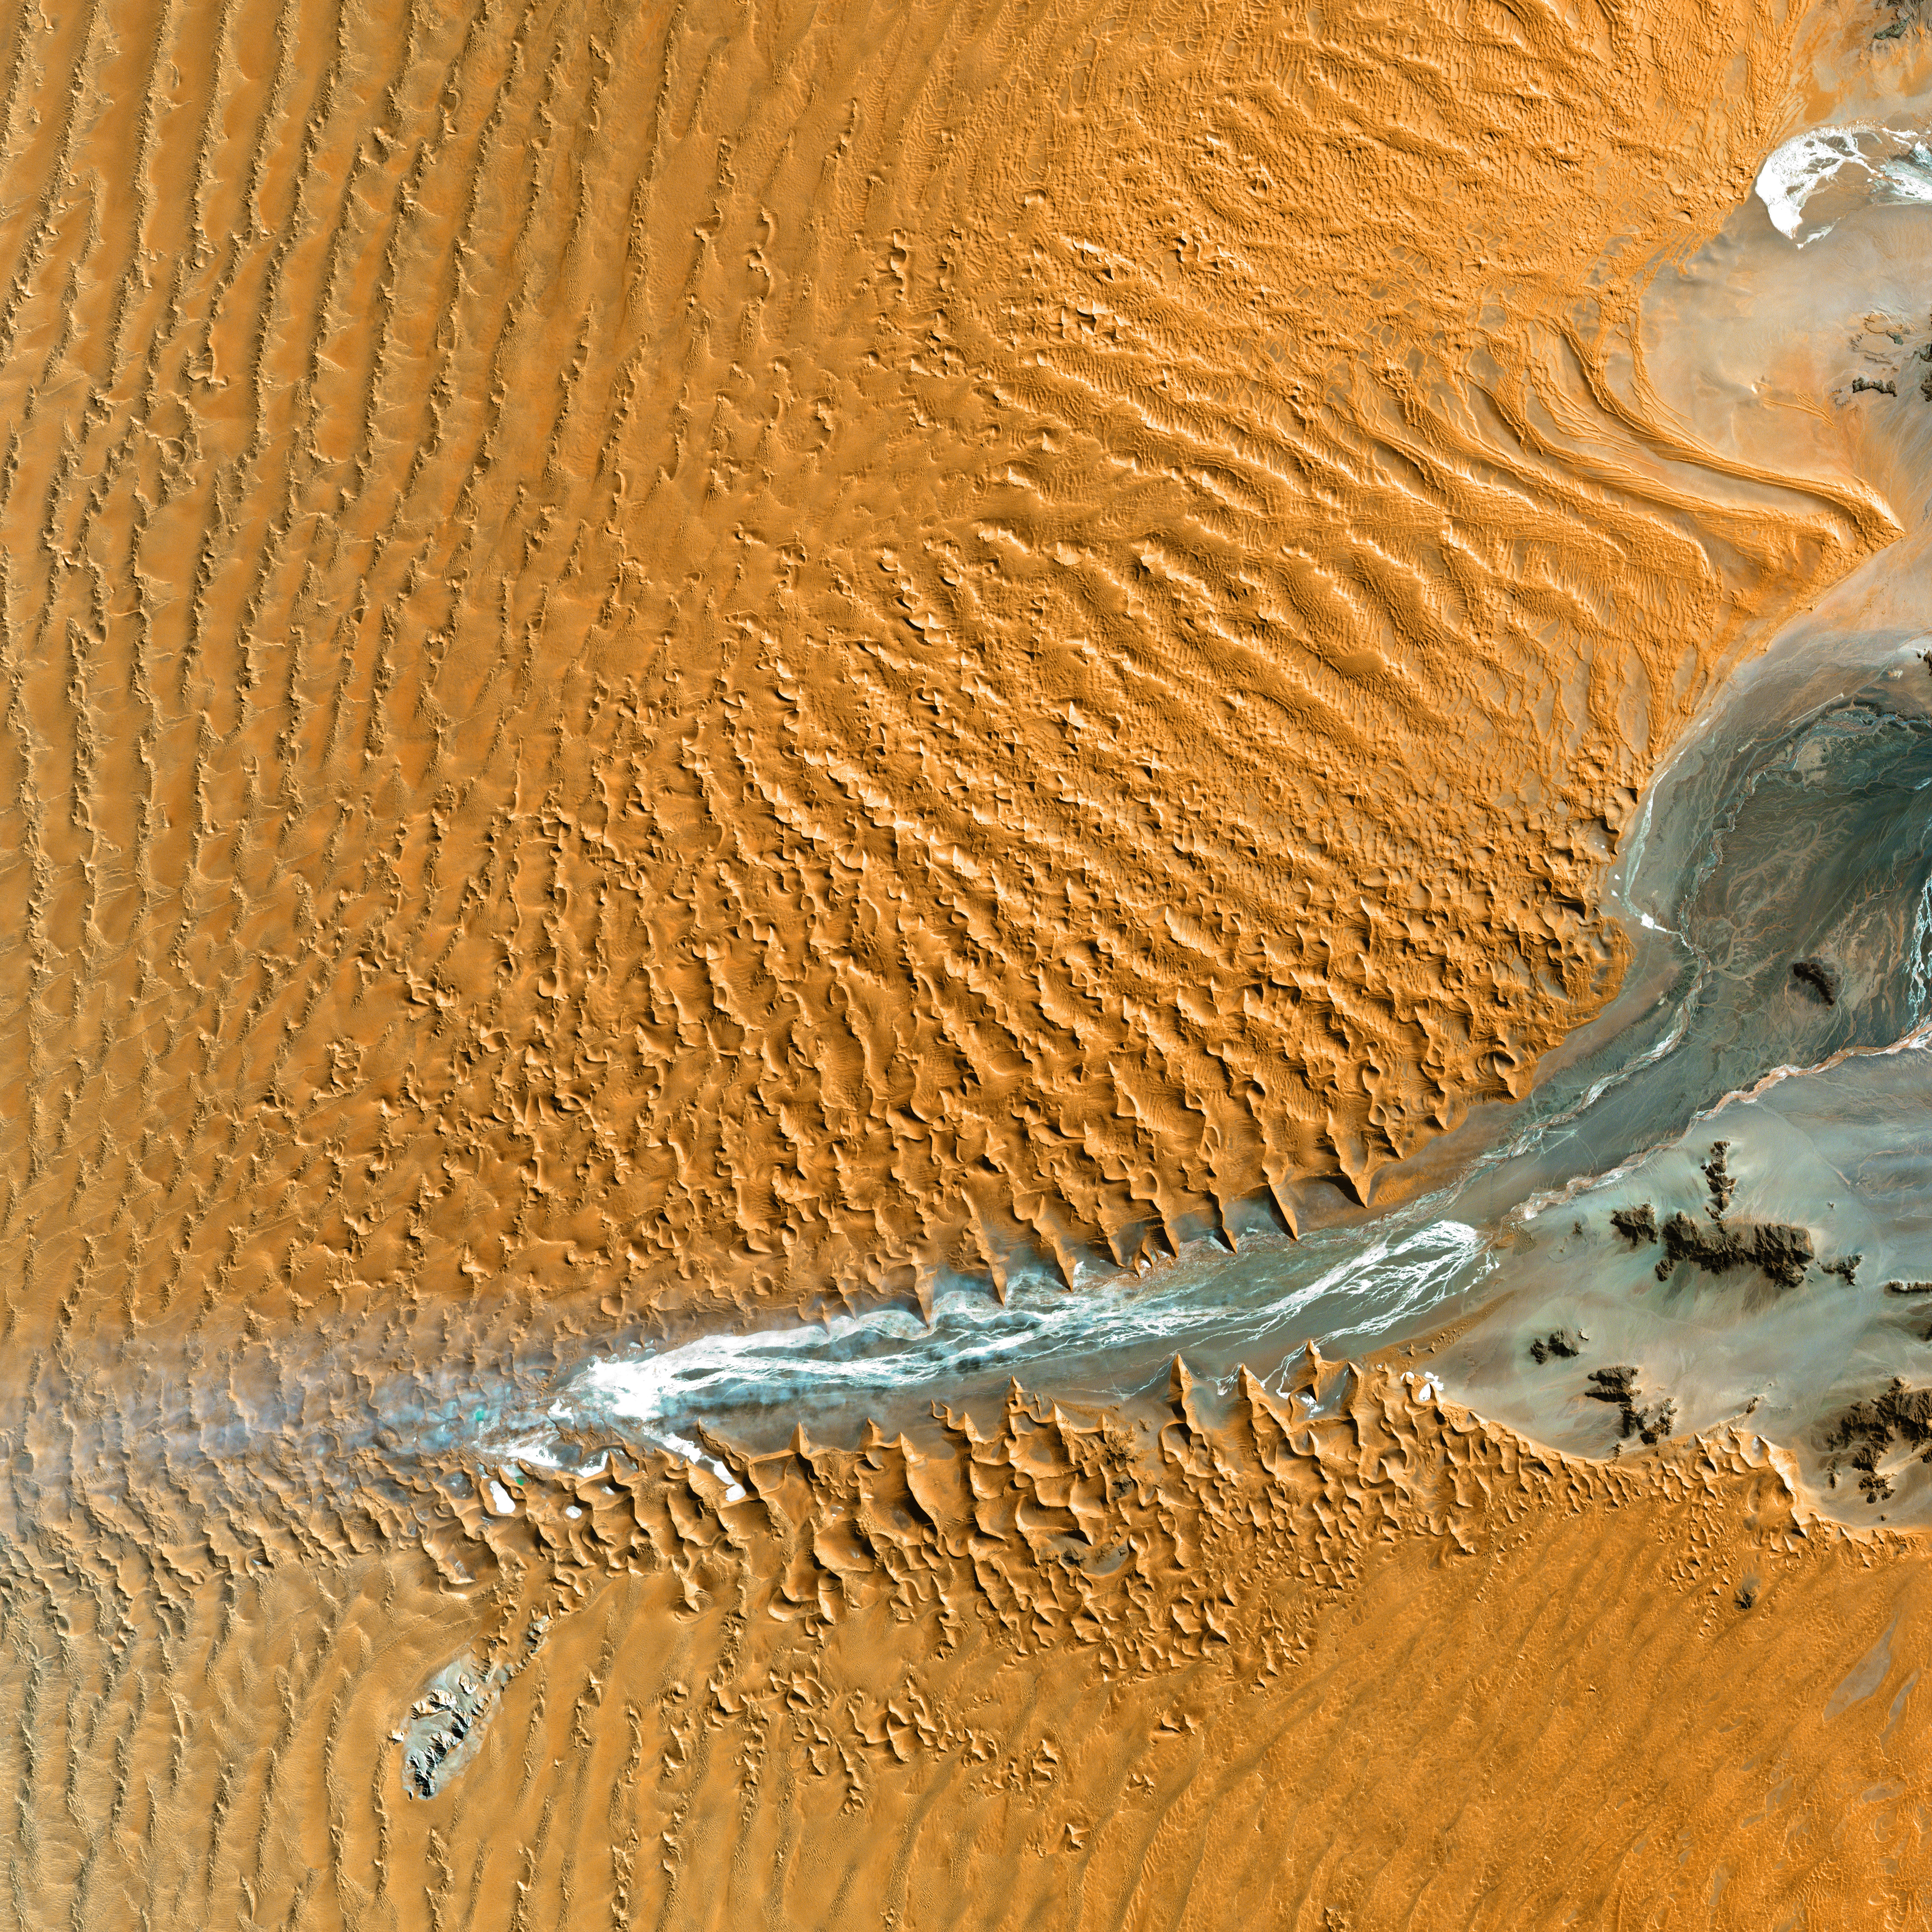 dunes, desert, view from above, texture, textures, relief, links